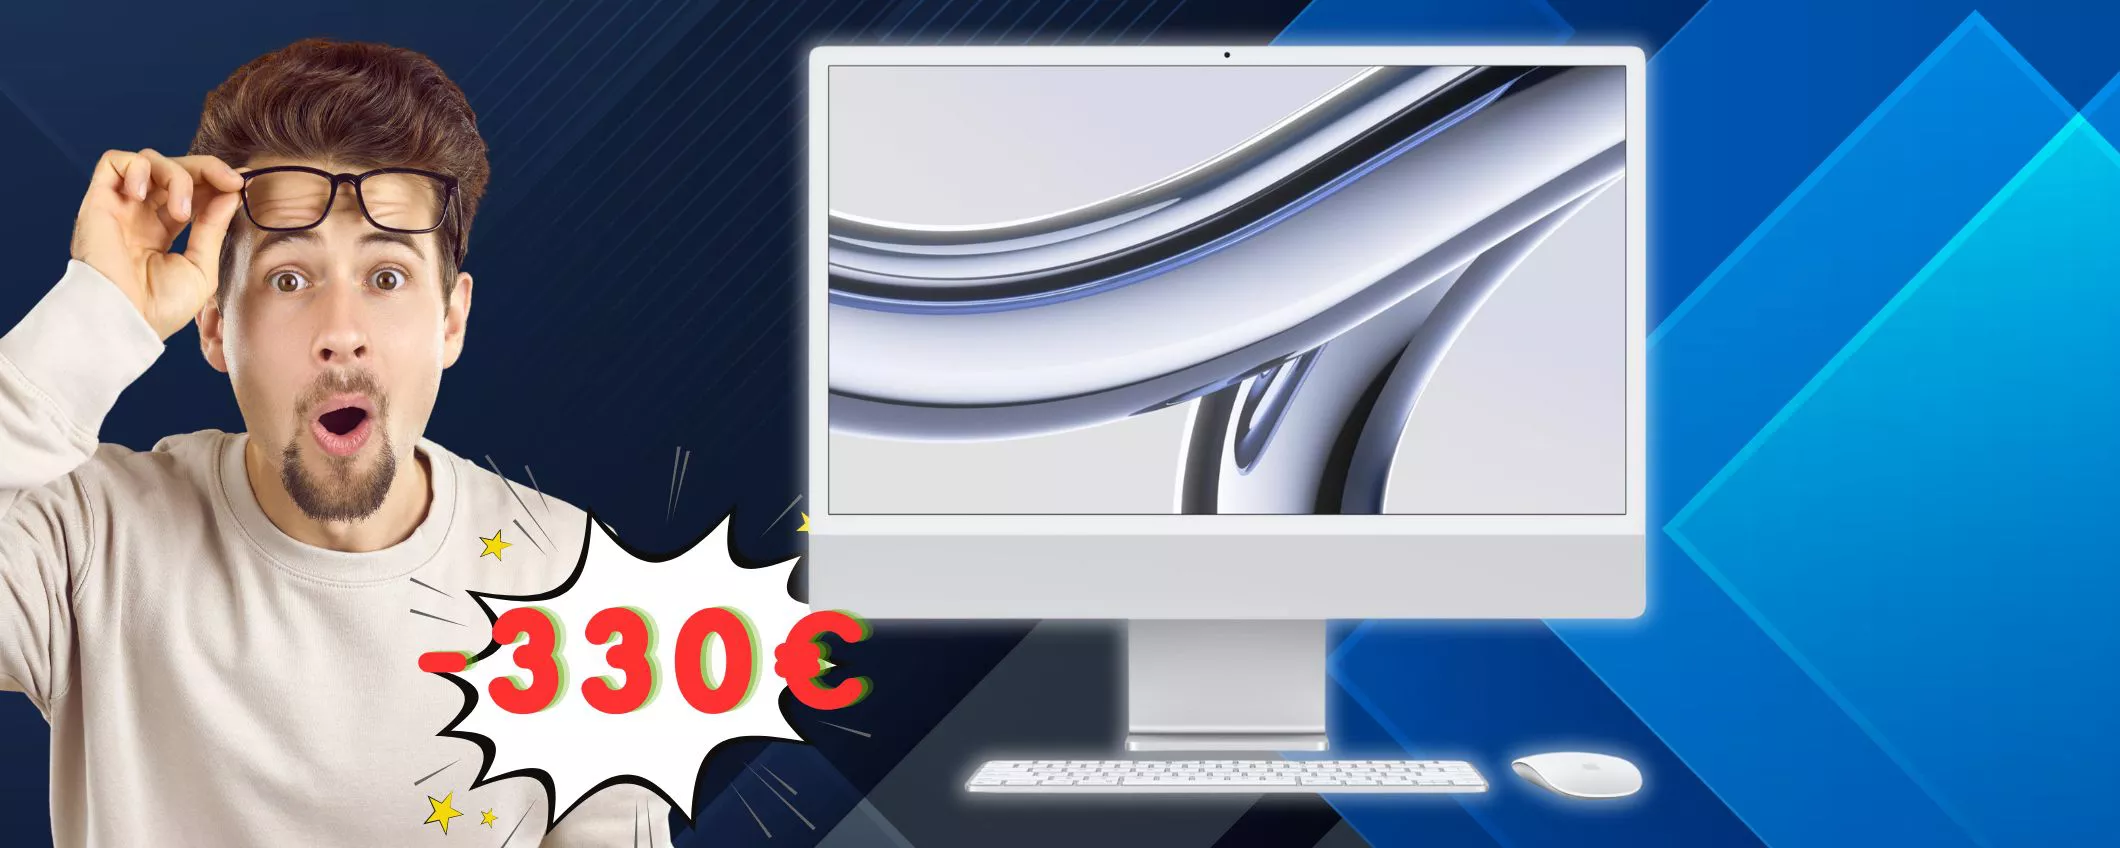 Sconto FOLLE per l'ultimo iMac: oggi costa 330€ IN MENO (-20%)